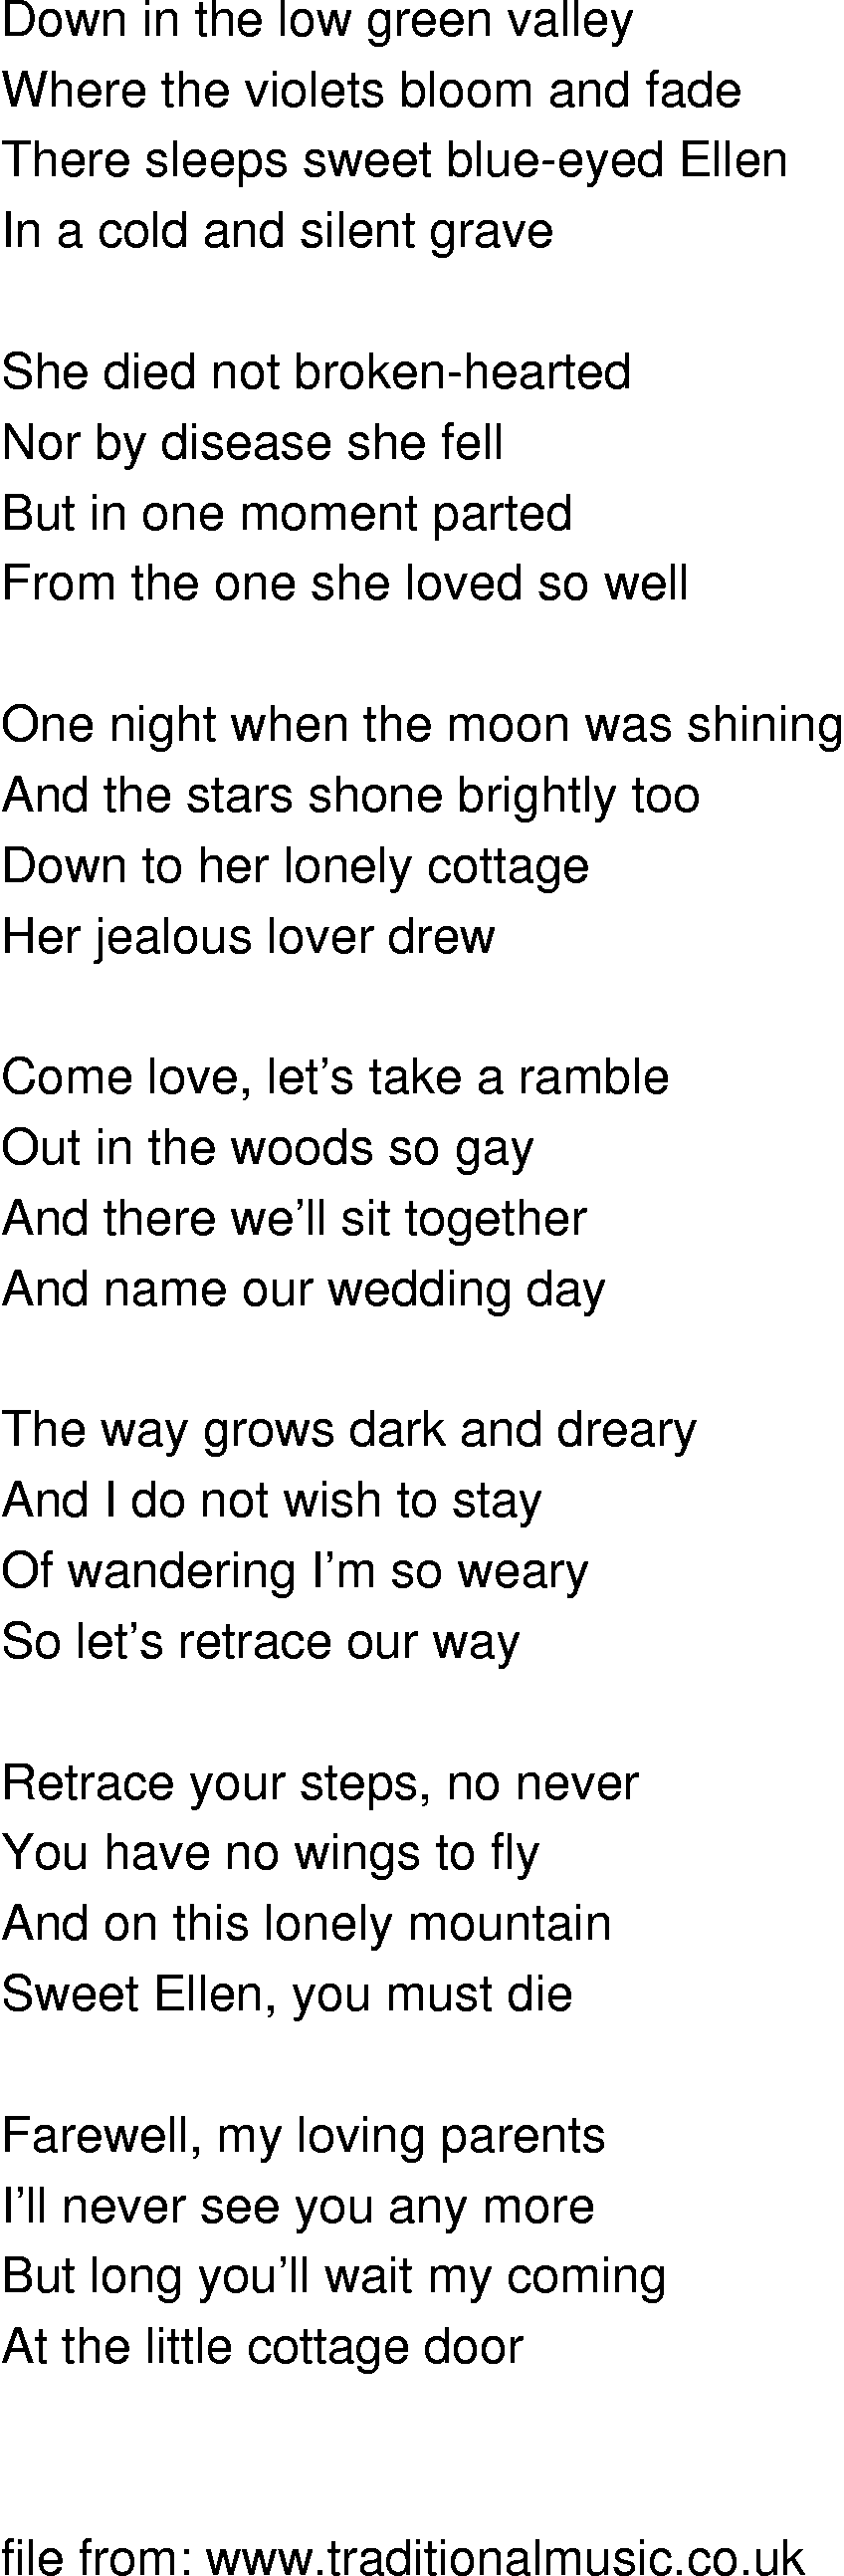 Old-Time (oldtimey) Song Lyrics - jealous lover